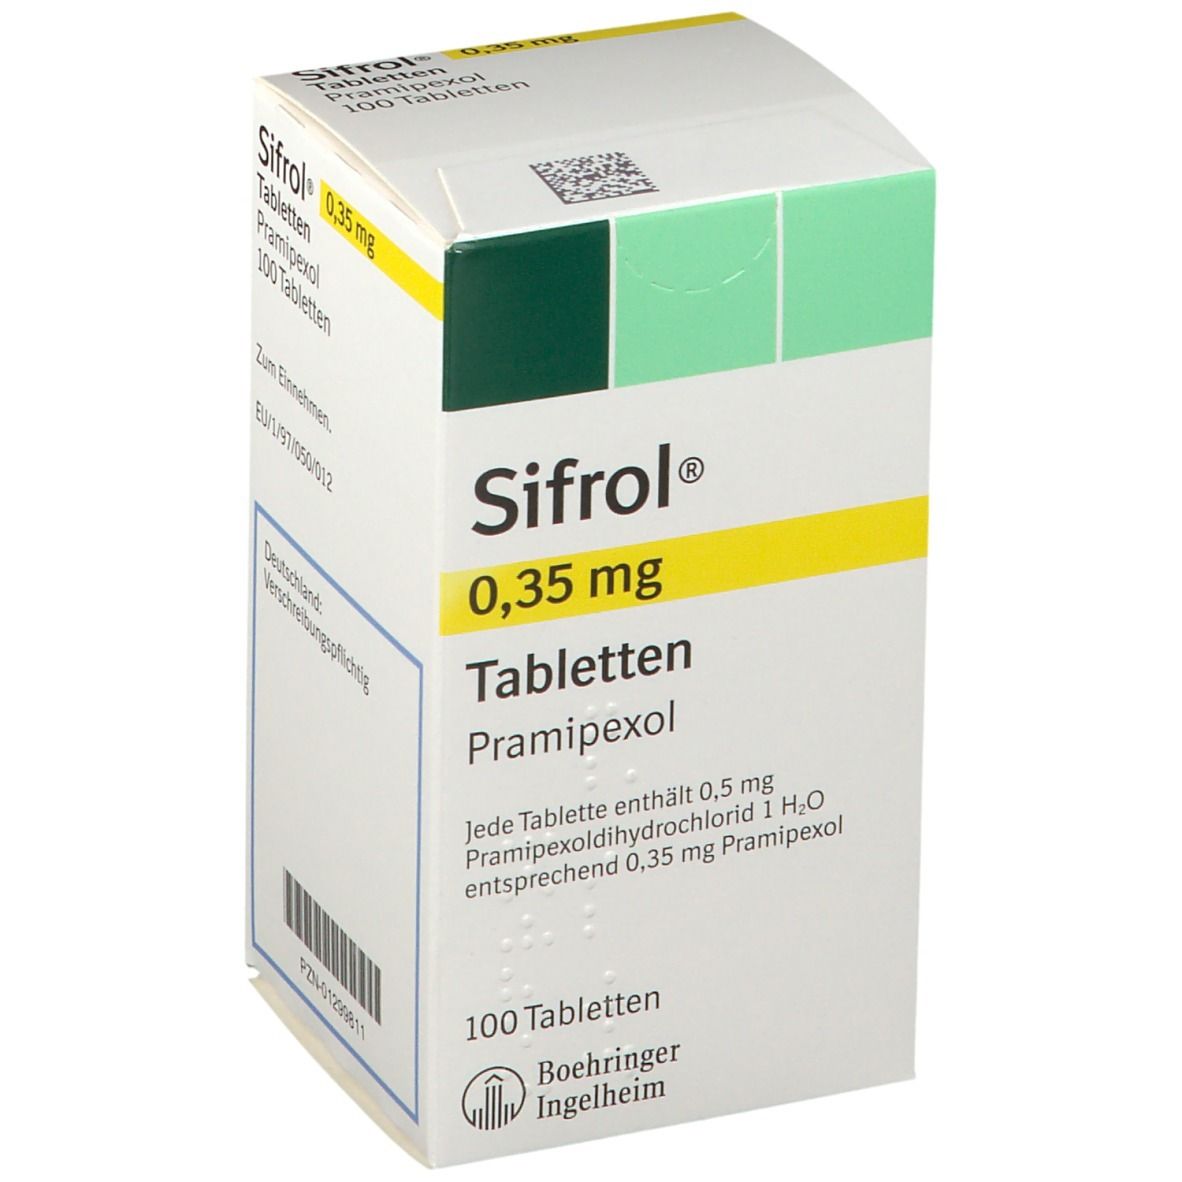 Sifrol® 0,35 mg